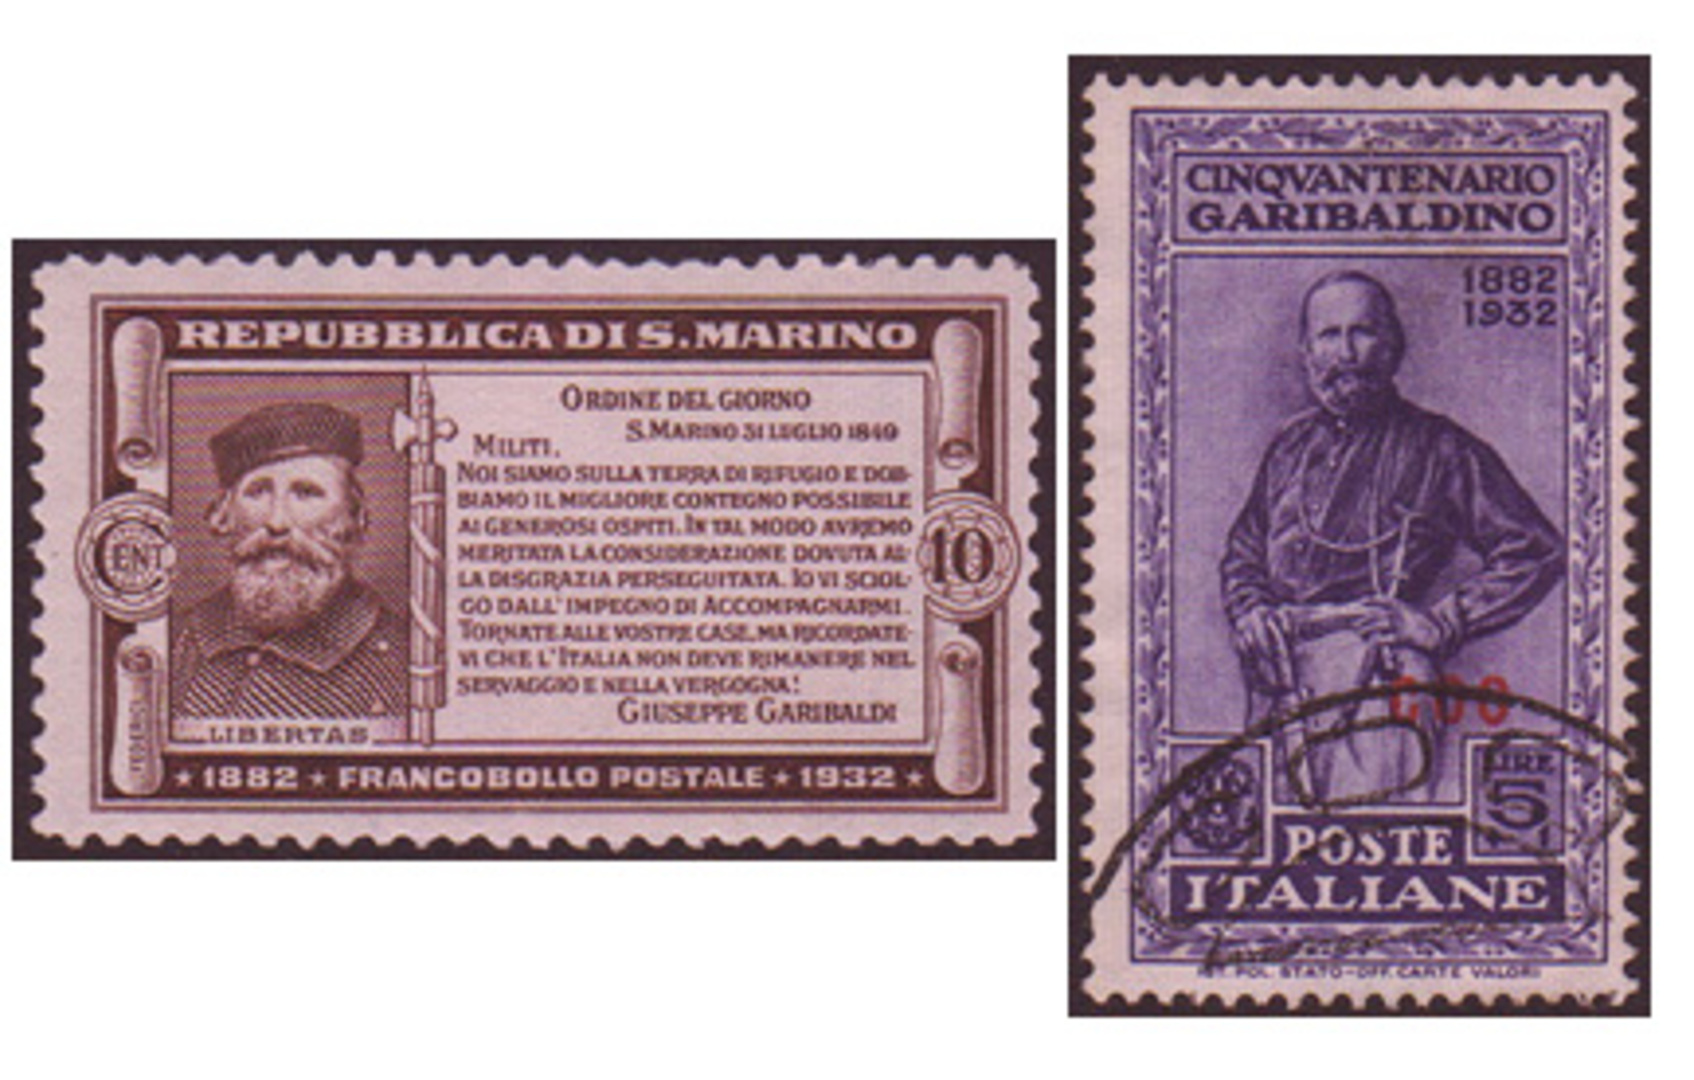 Giuseppe Garibaldi 'Hero of Two Worlds' stamp